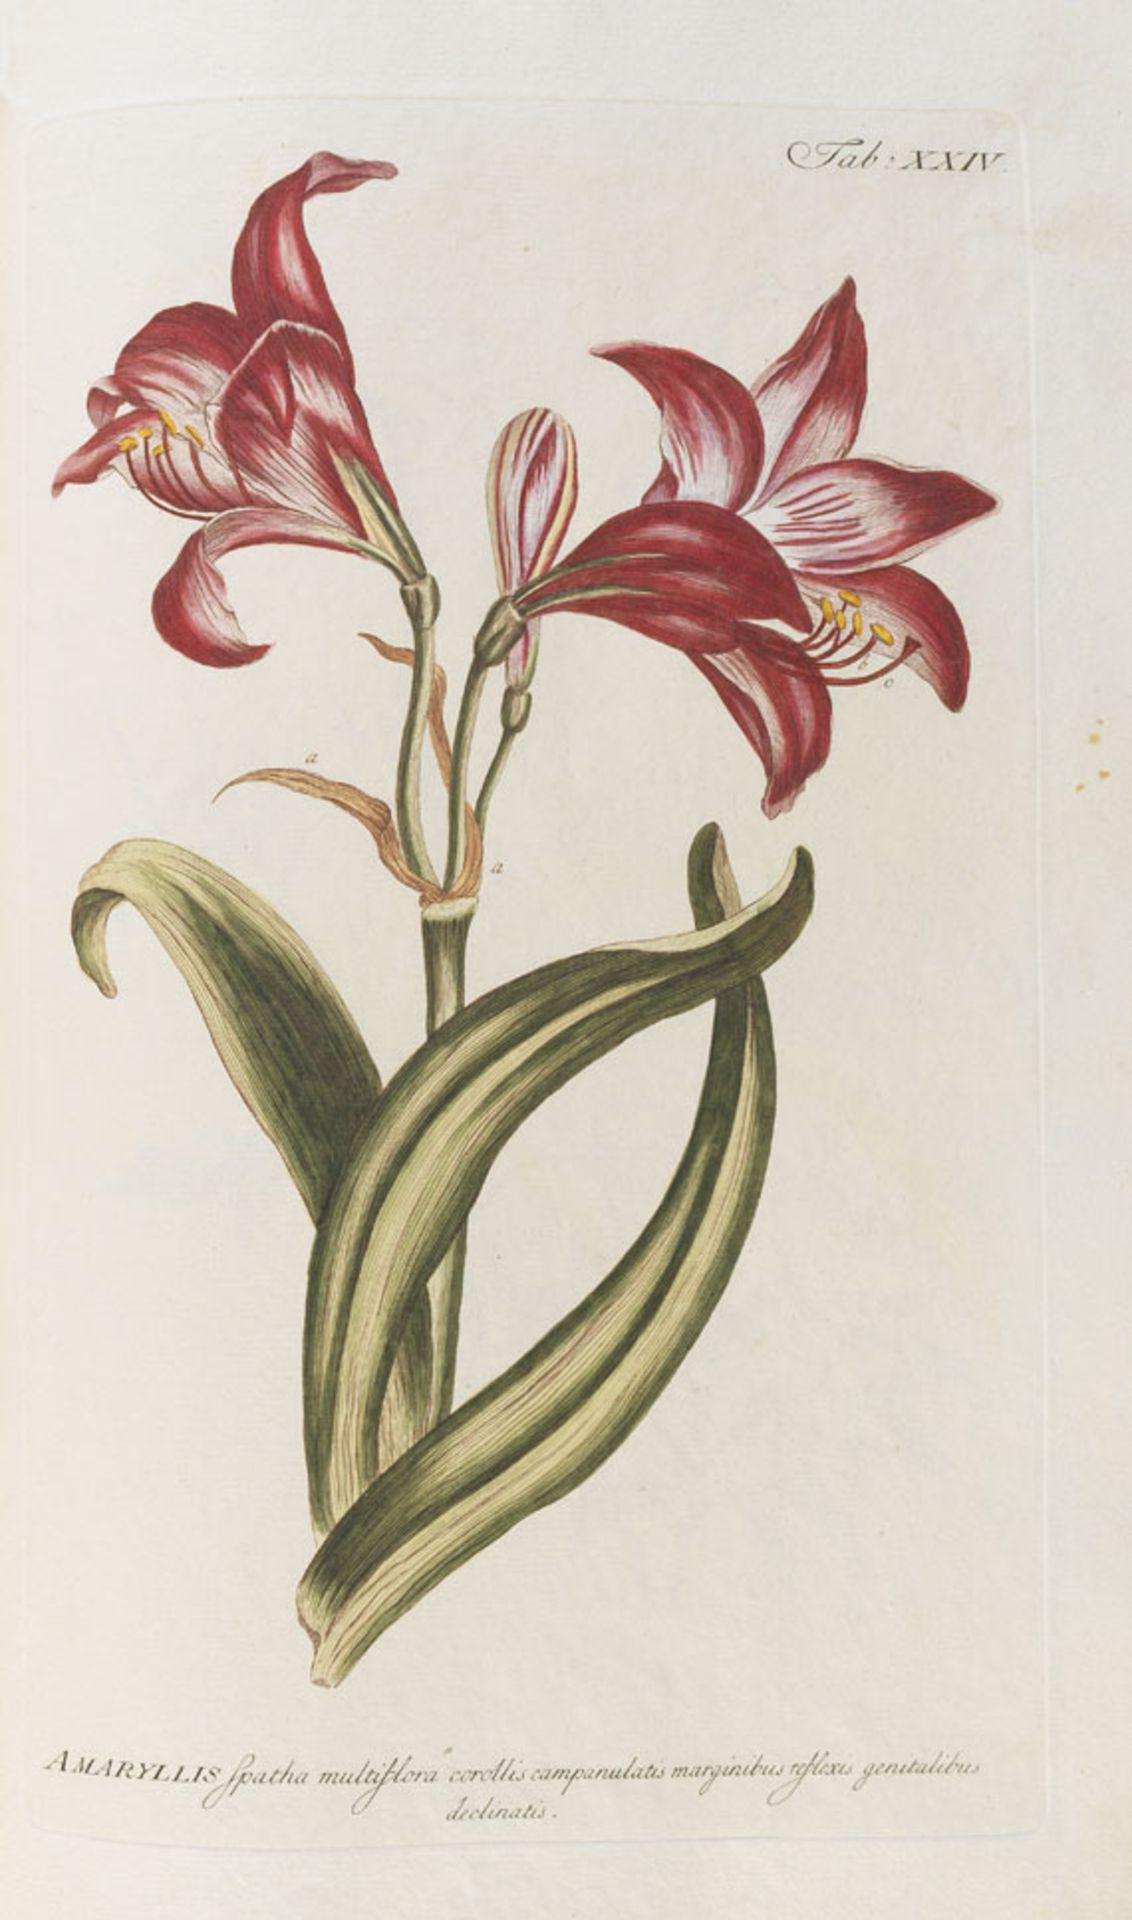 Philipp Miller Abbildungen der nützlichsten, schönsten und seltensten Pflanzen welche in seinem